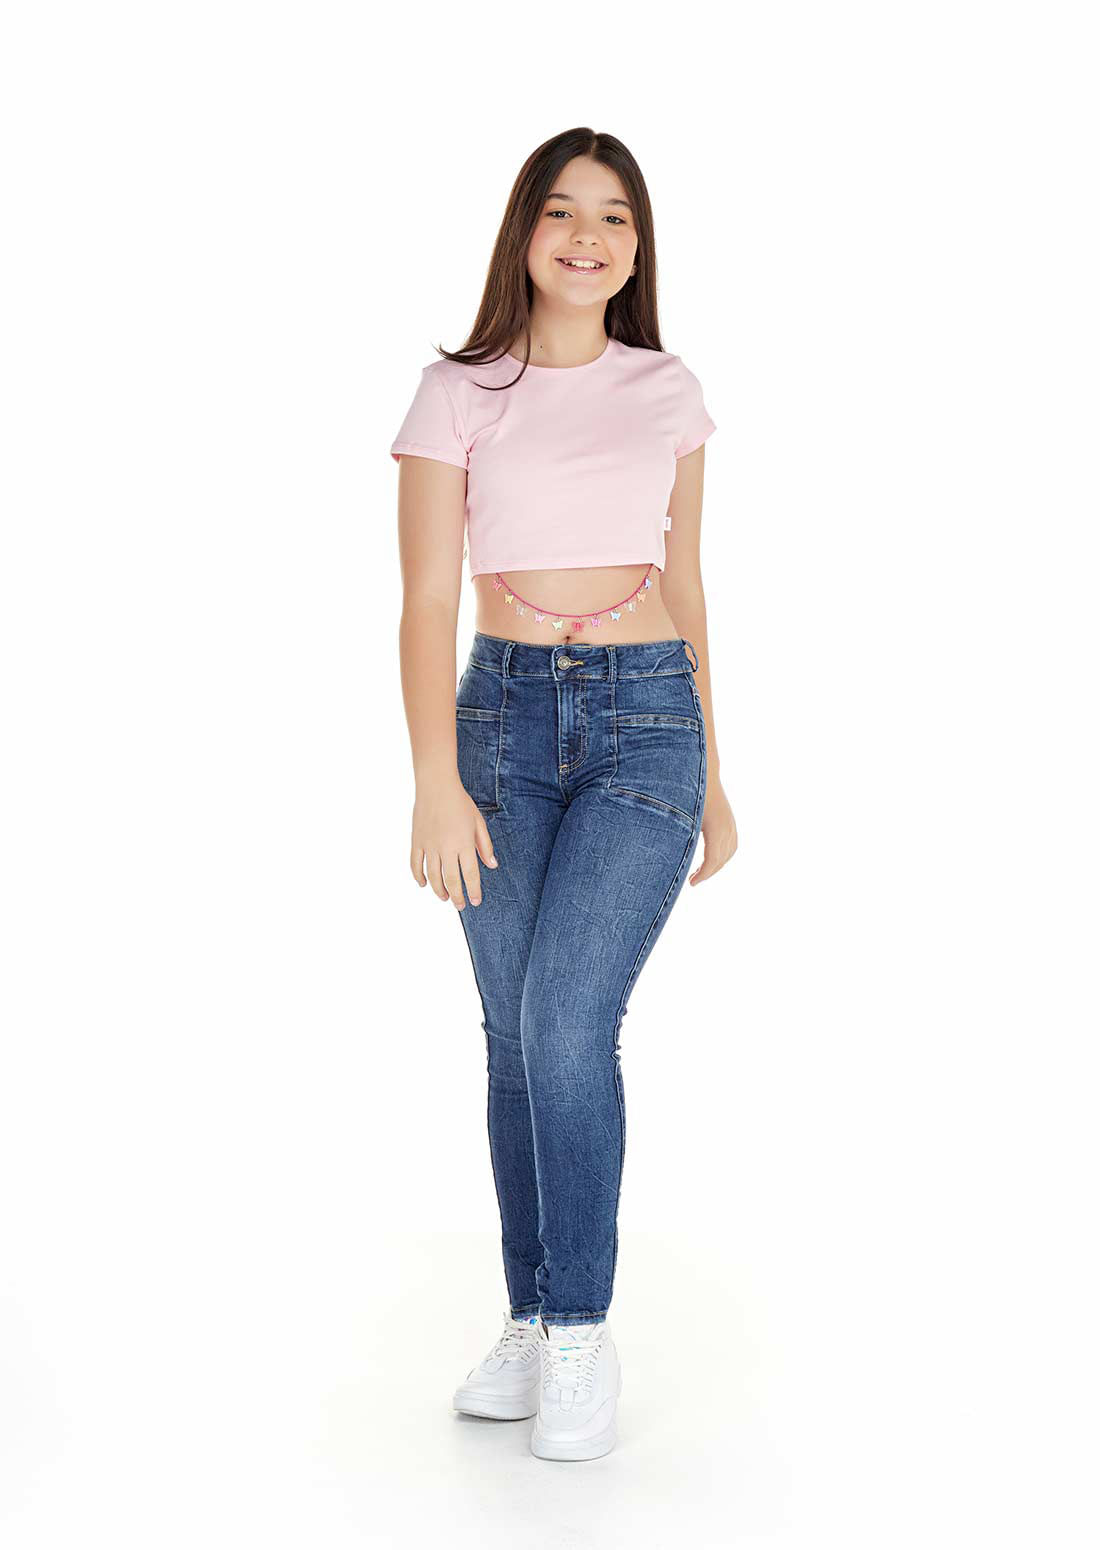 Ropa y jeans para niñas adolescentes | Yoyo Jeans